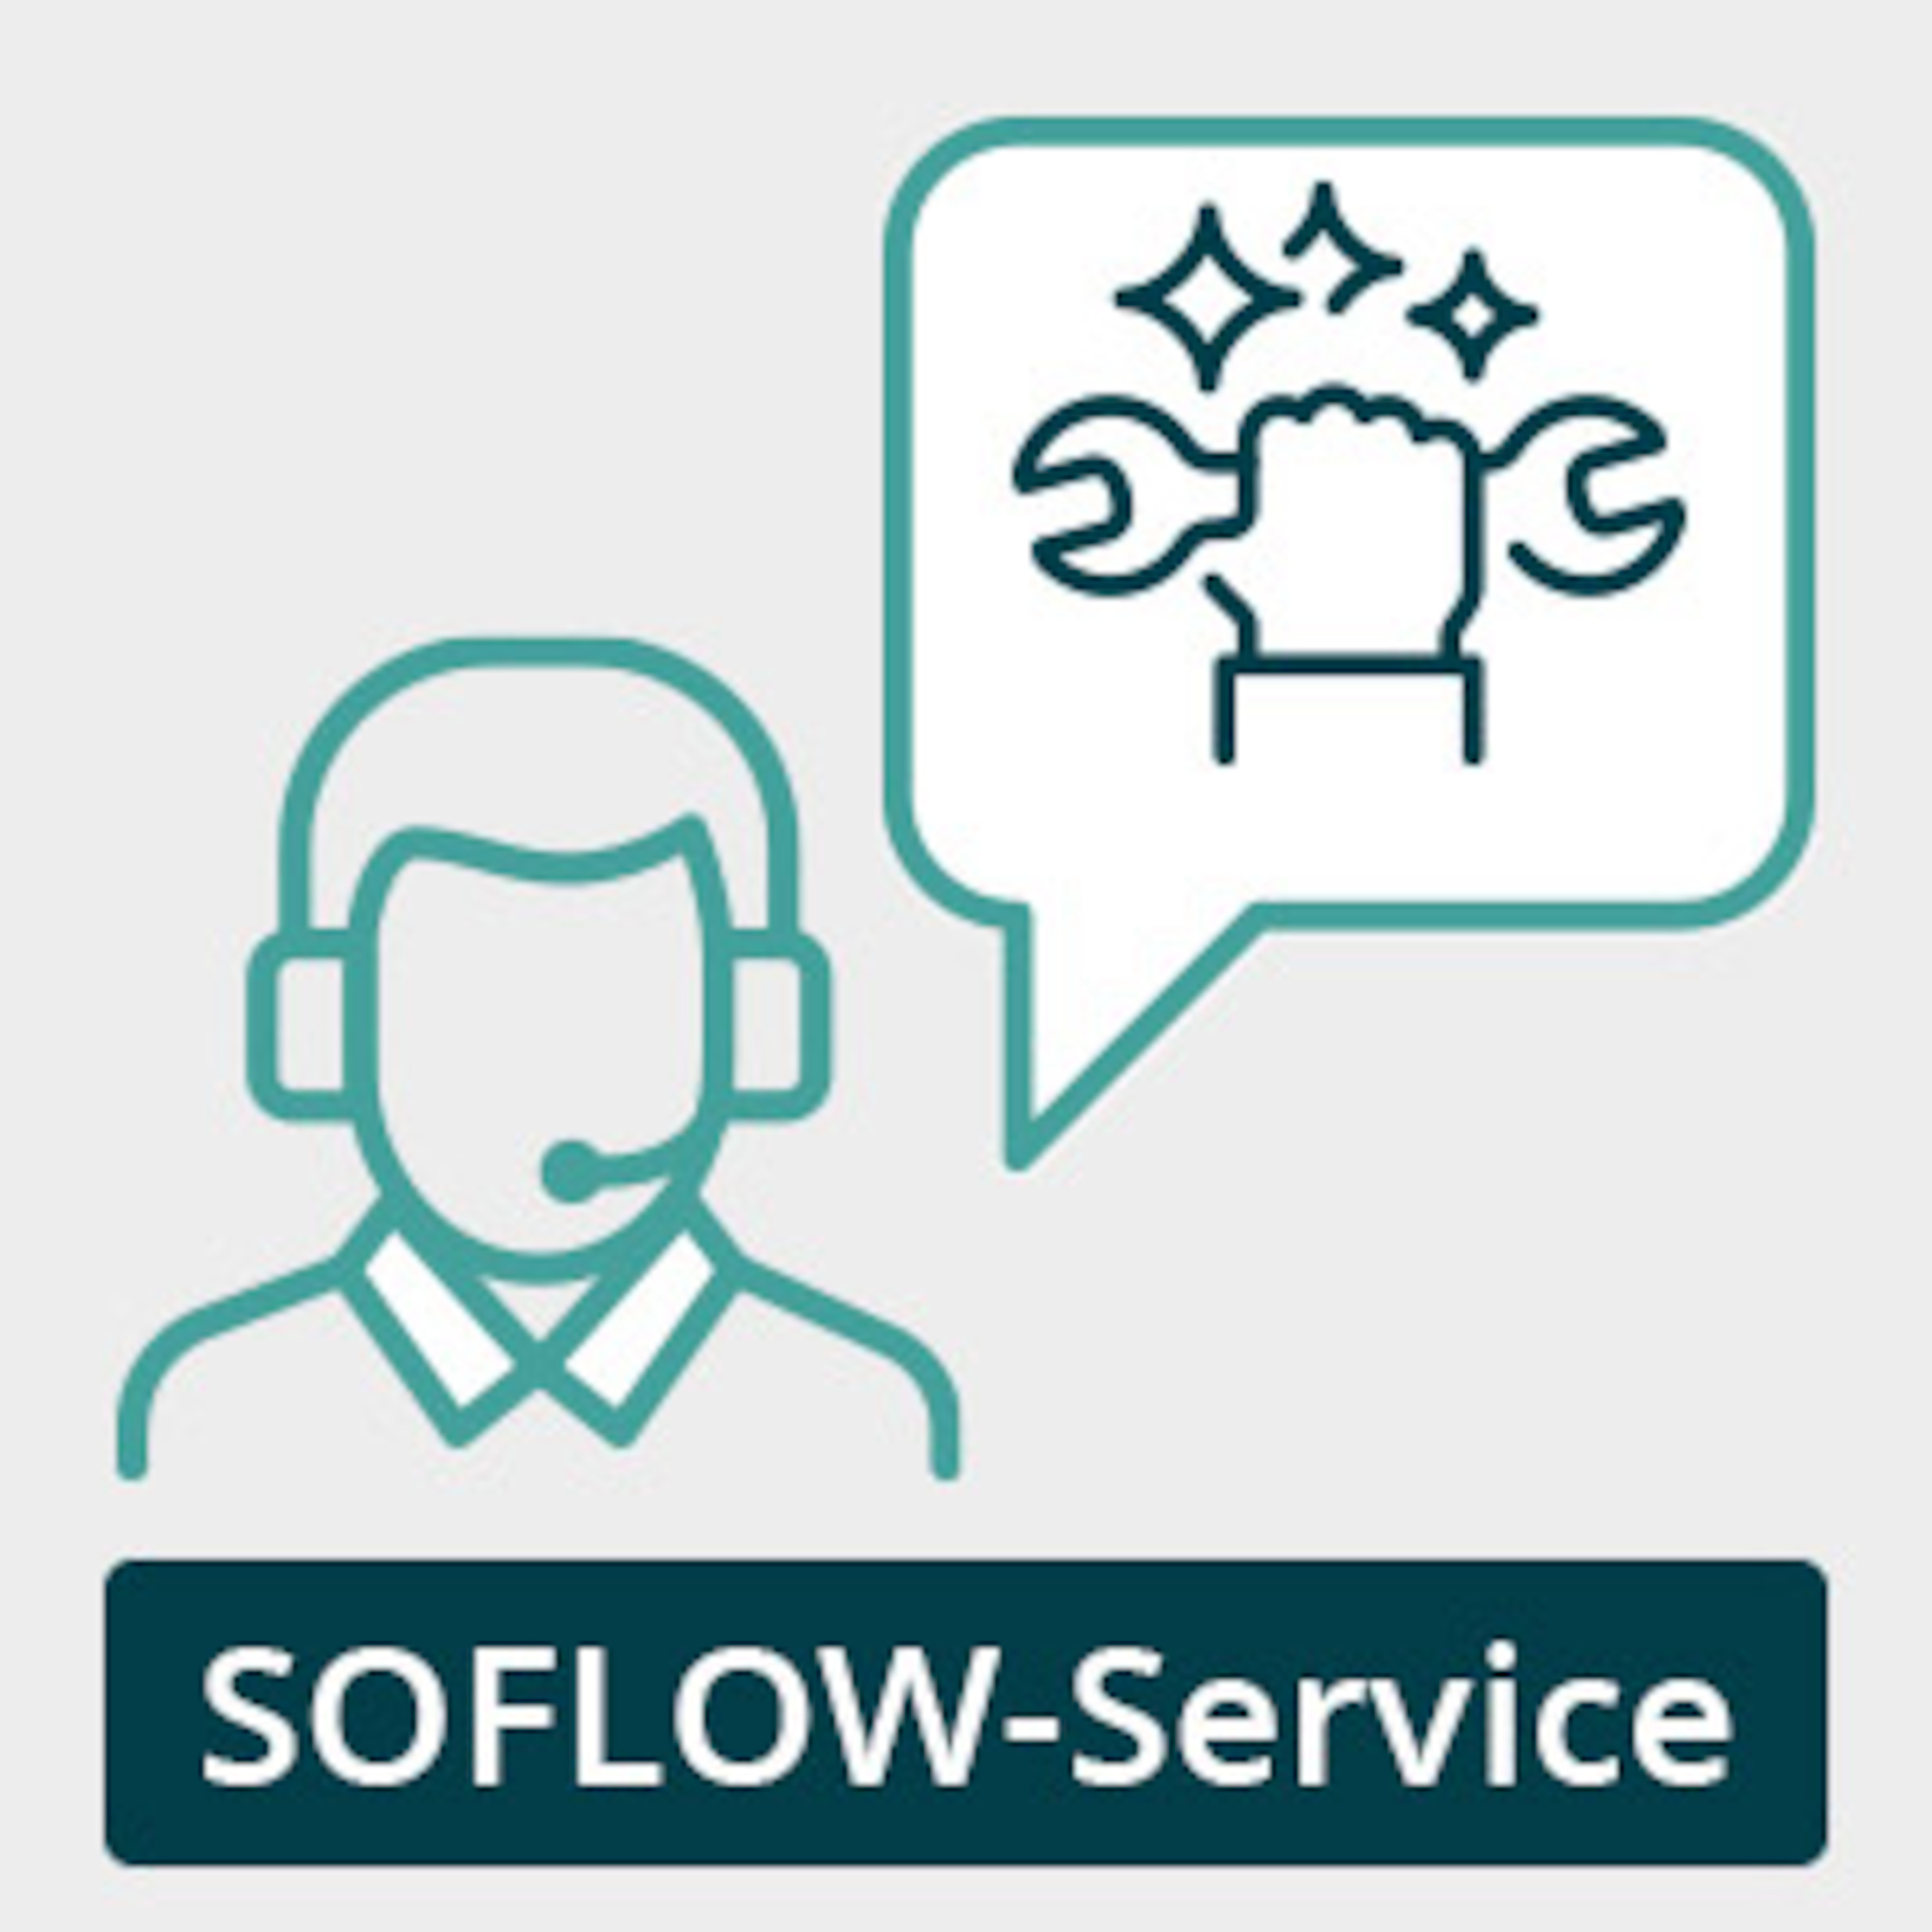 SoFlow-Service